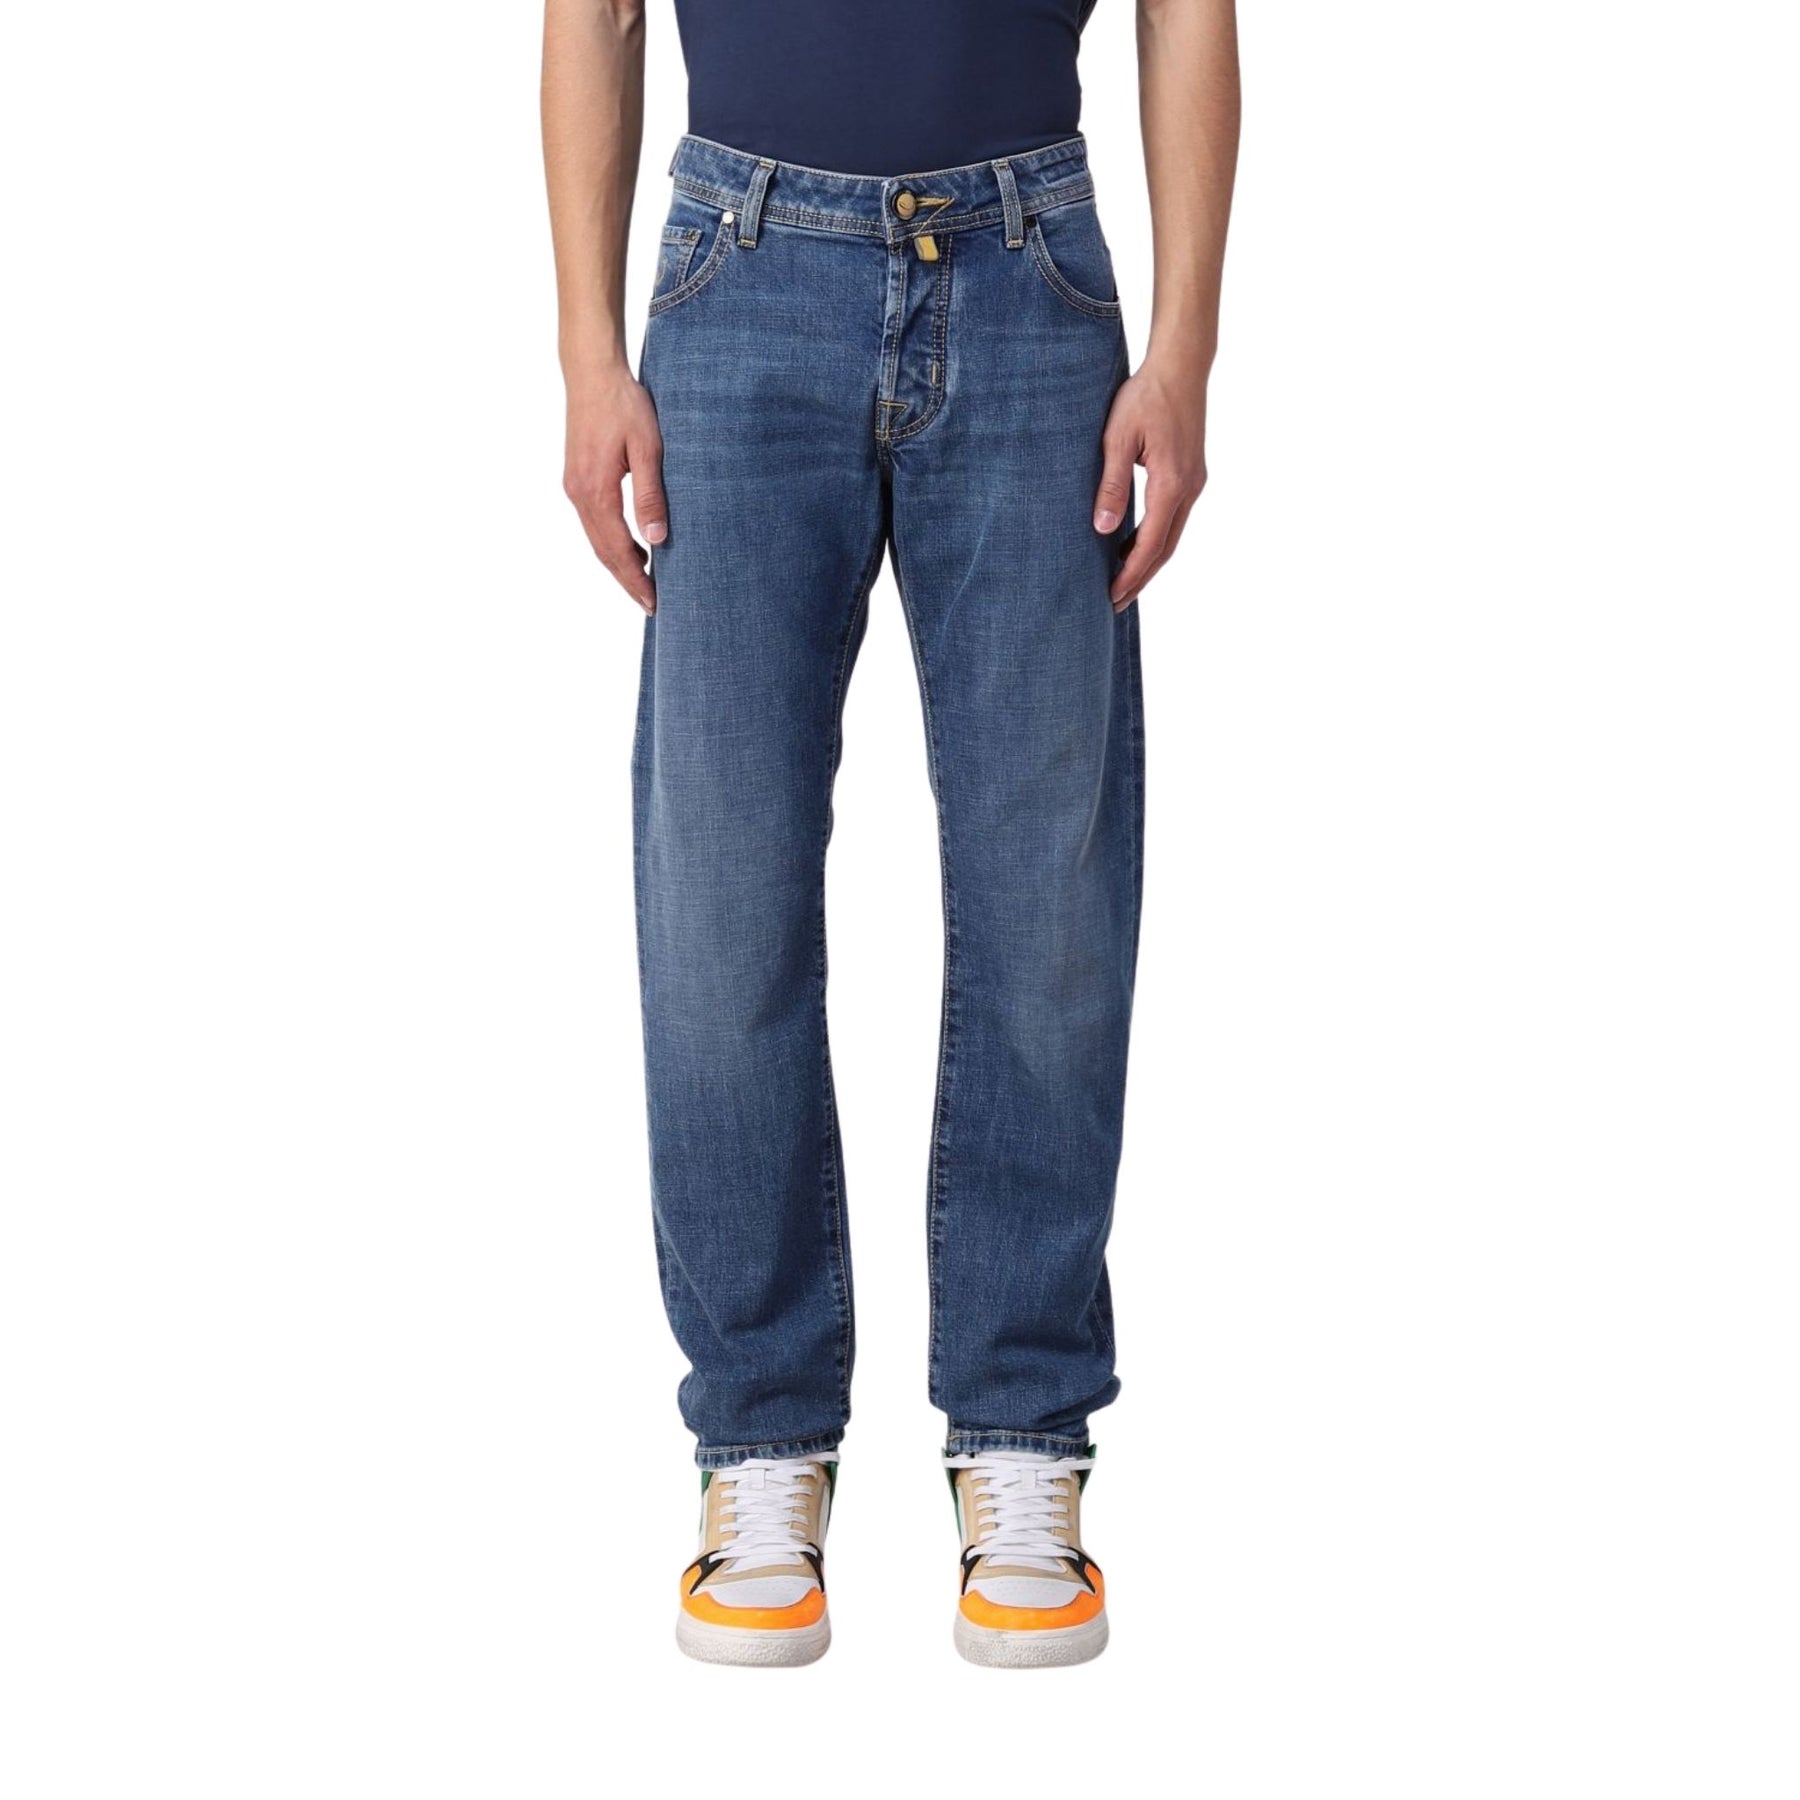 men's tapered leg jeans